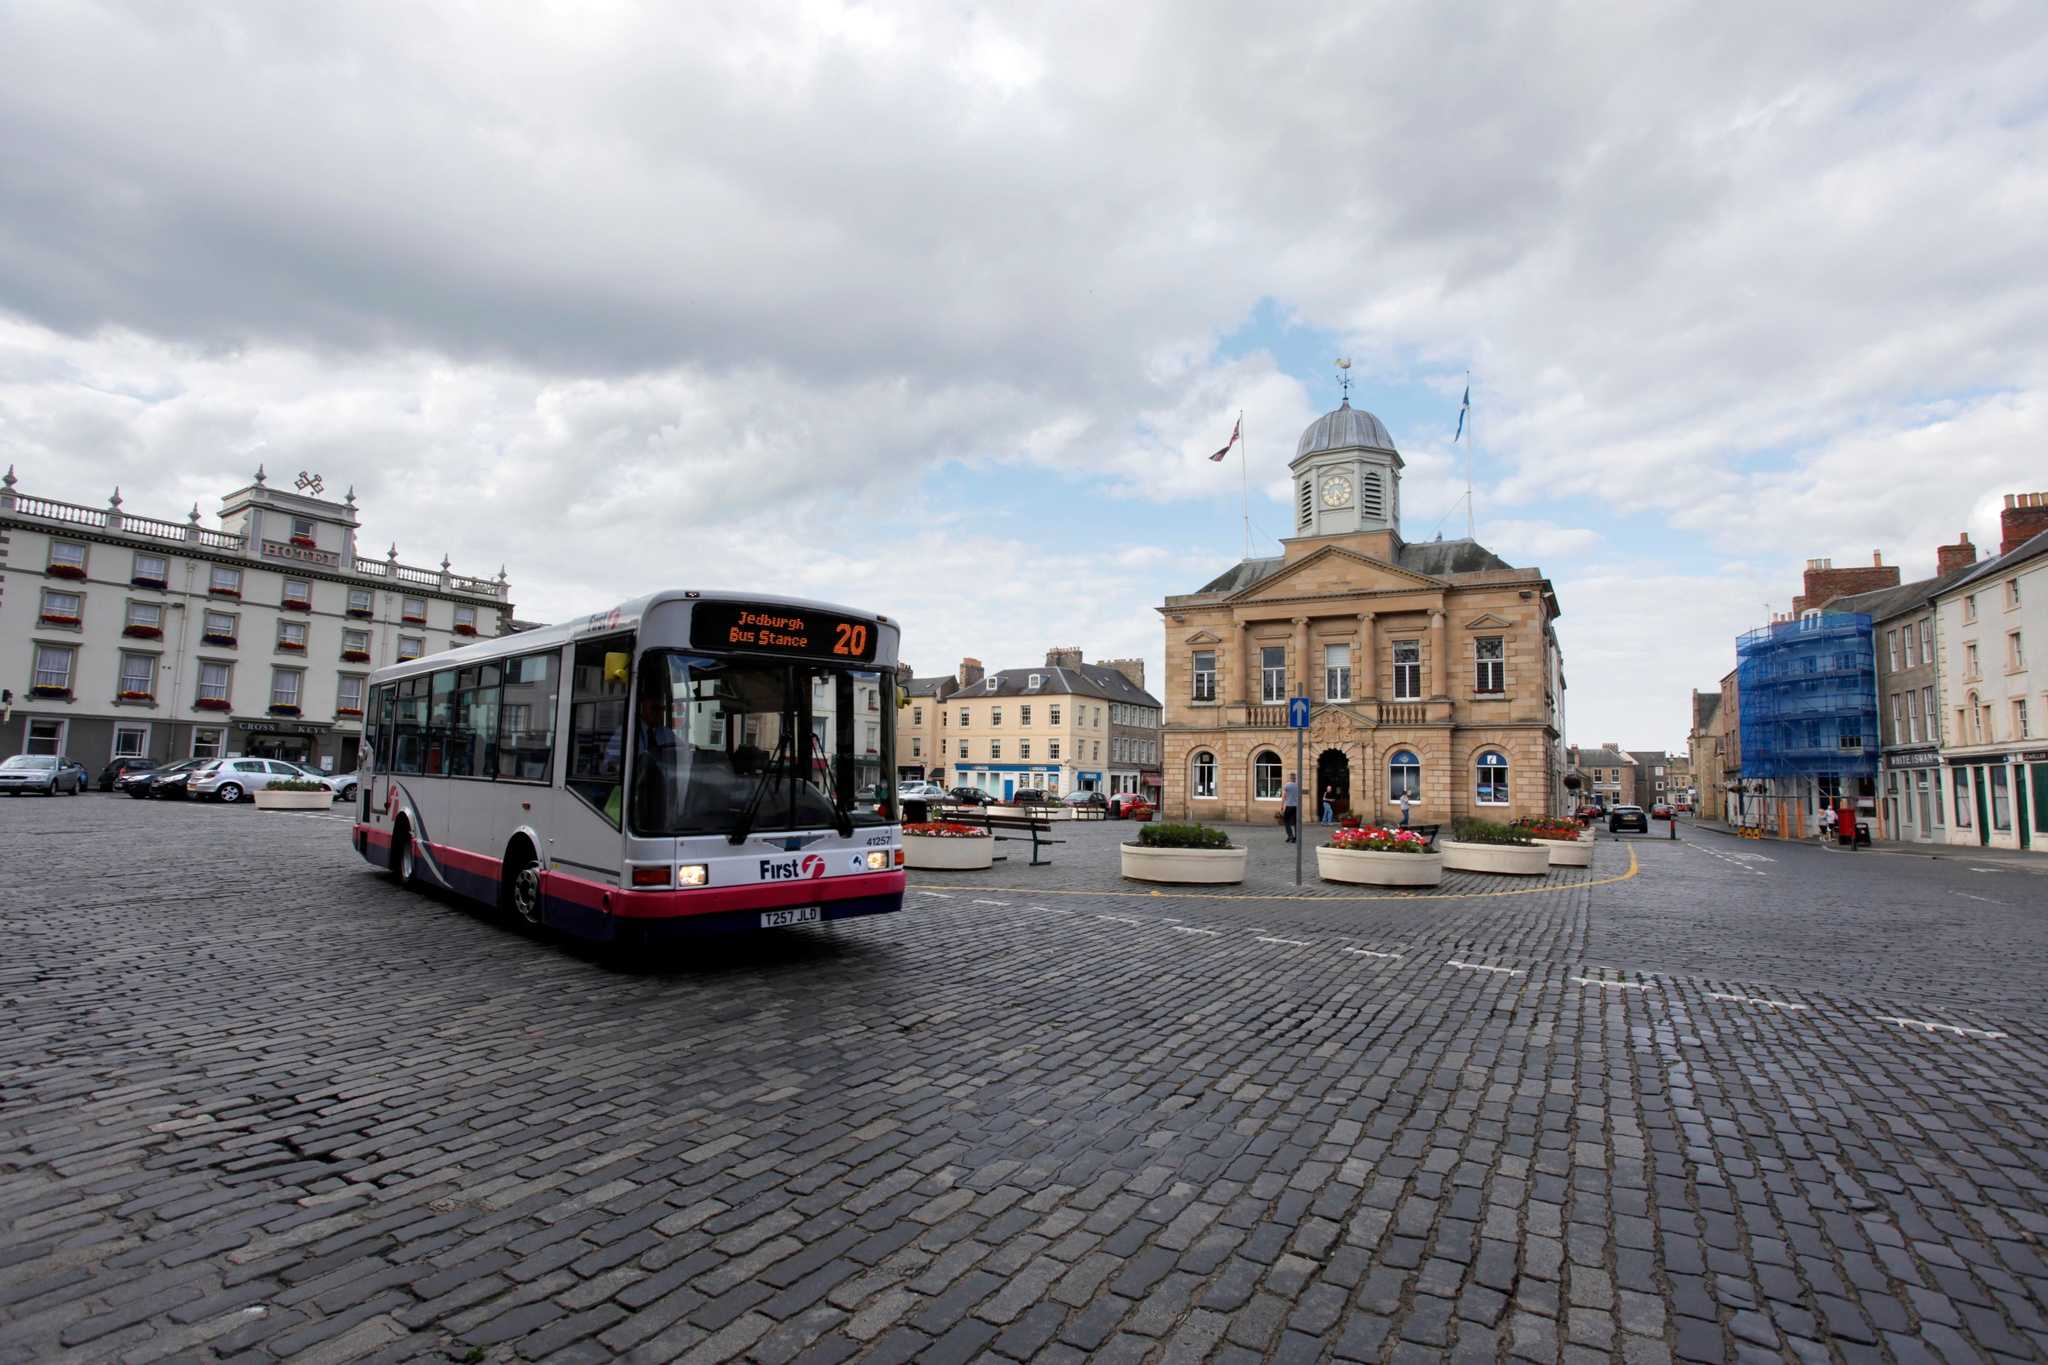 bus tours scotland 2023